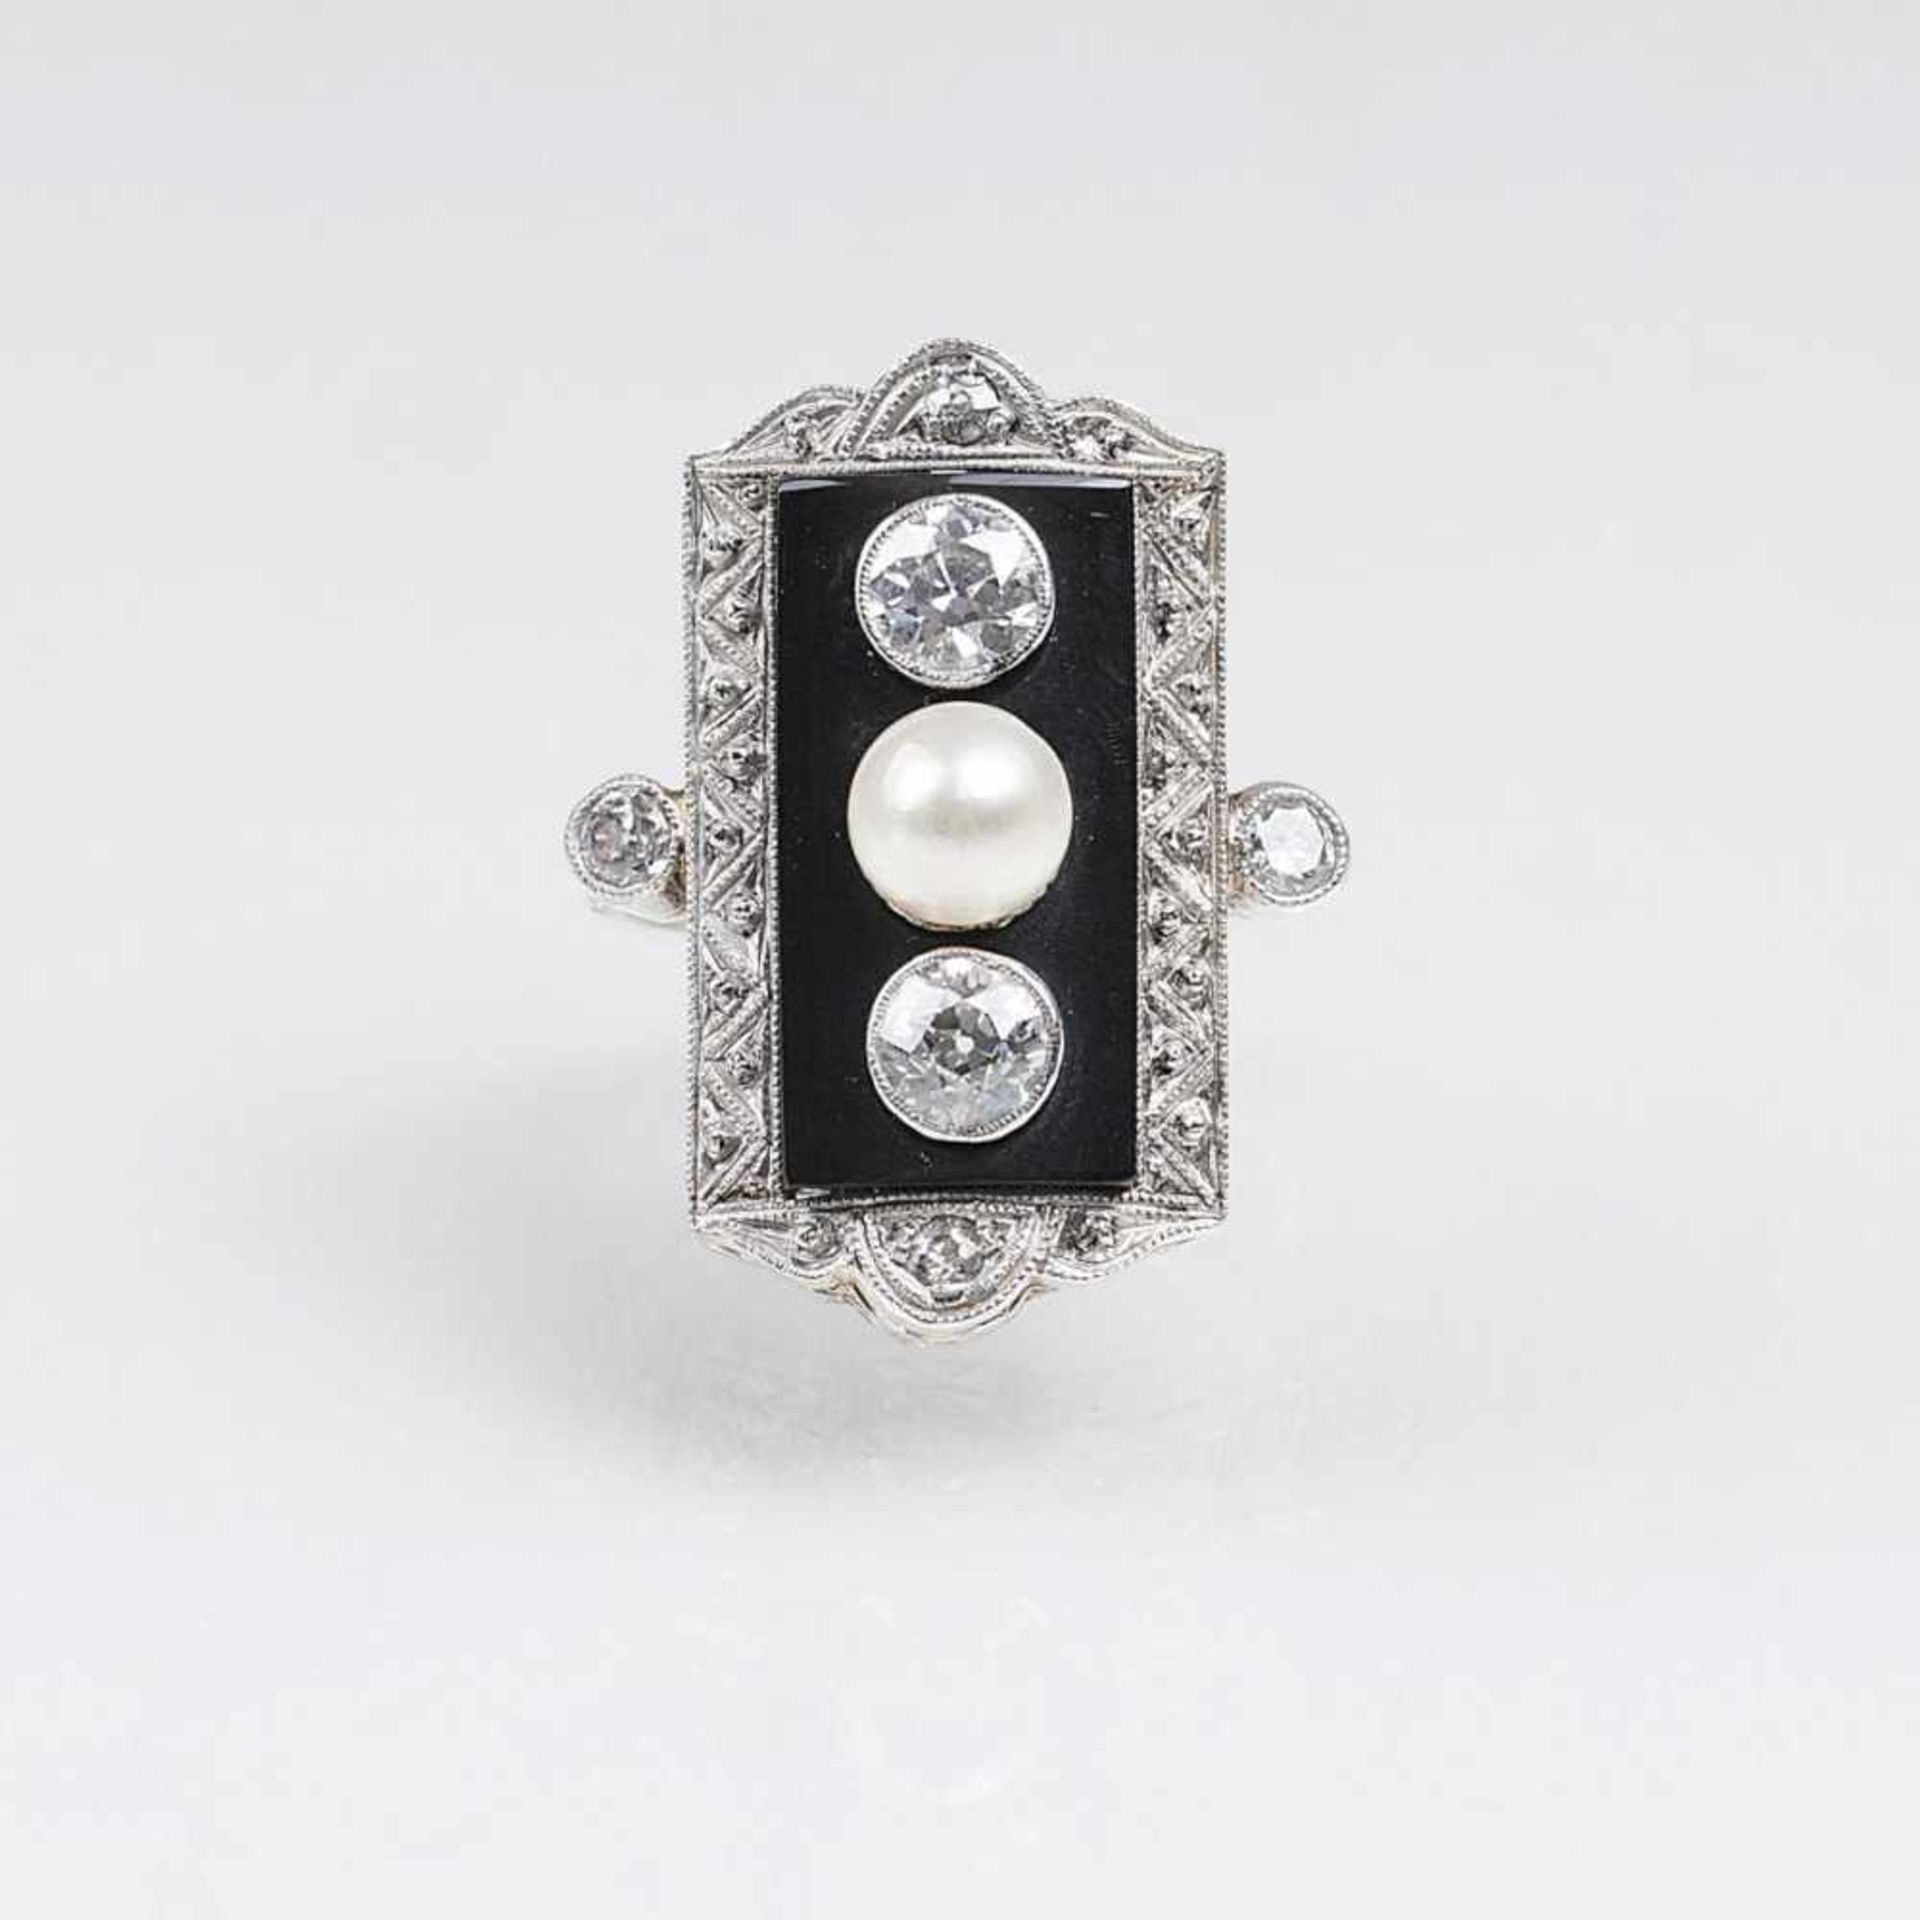 Art-déco Diamant-Perl-Ring mit Onyx-BesatzUm 1920. Platin mit WG. Gebogte Schauseite, auf Onyx